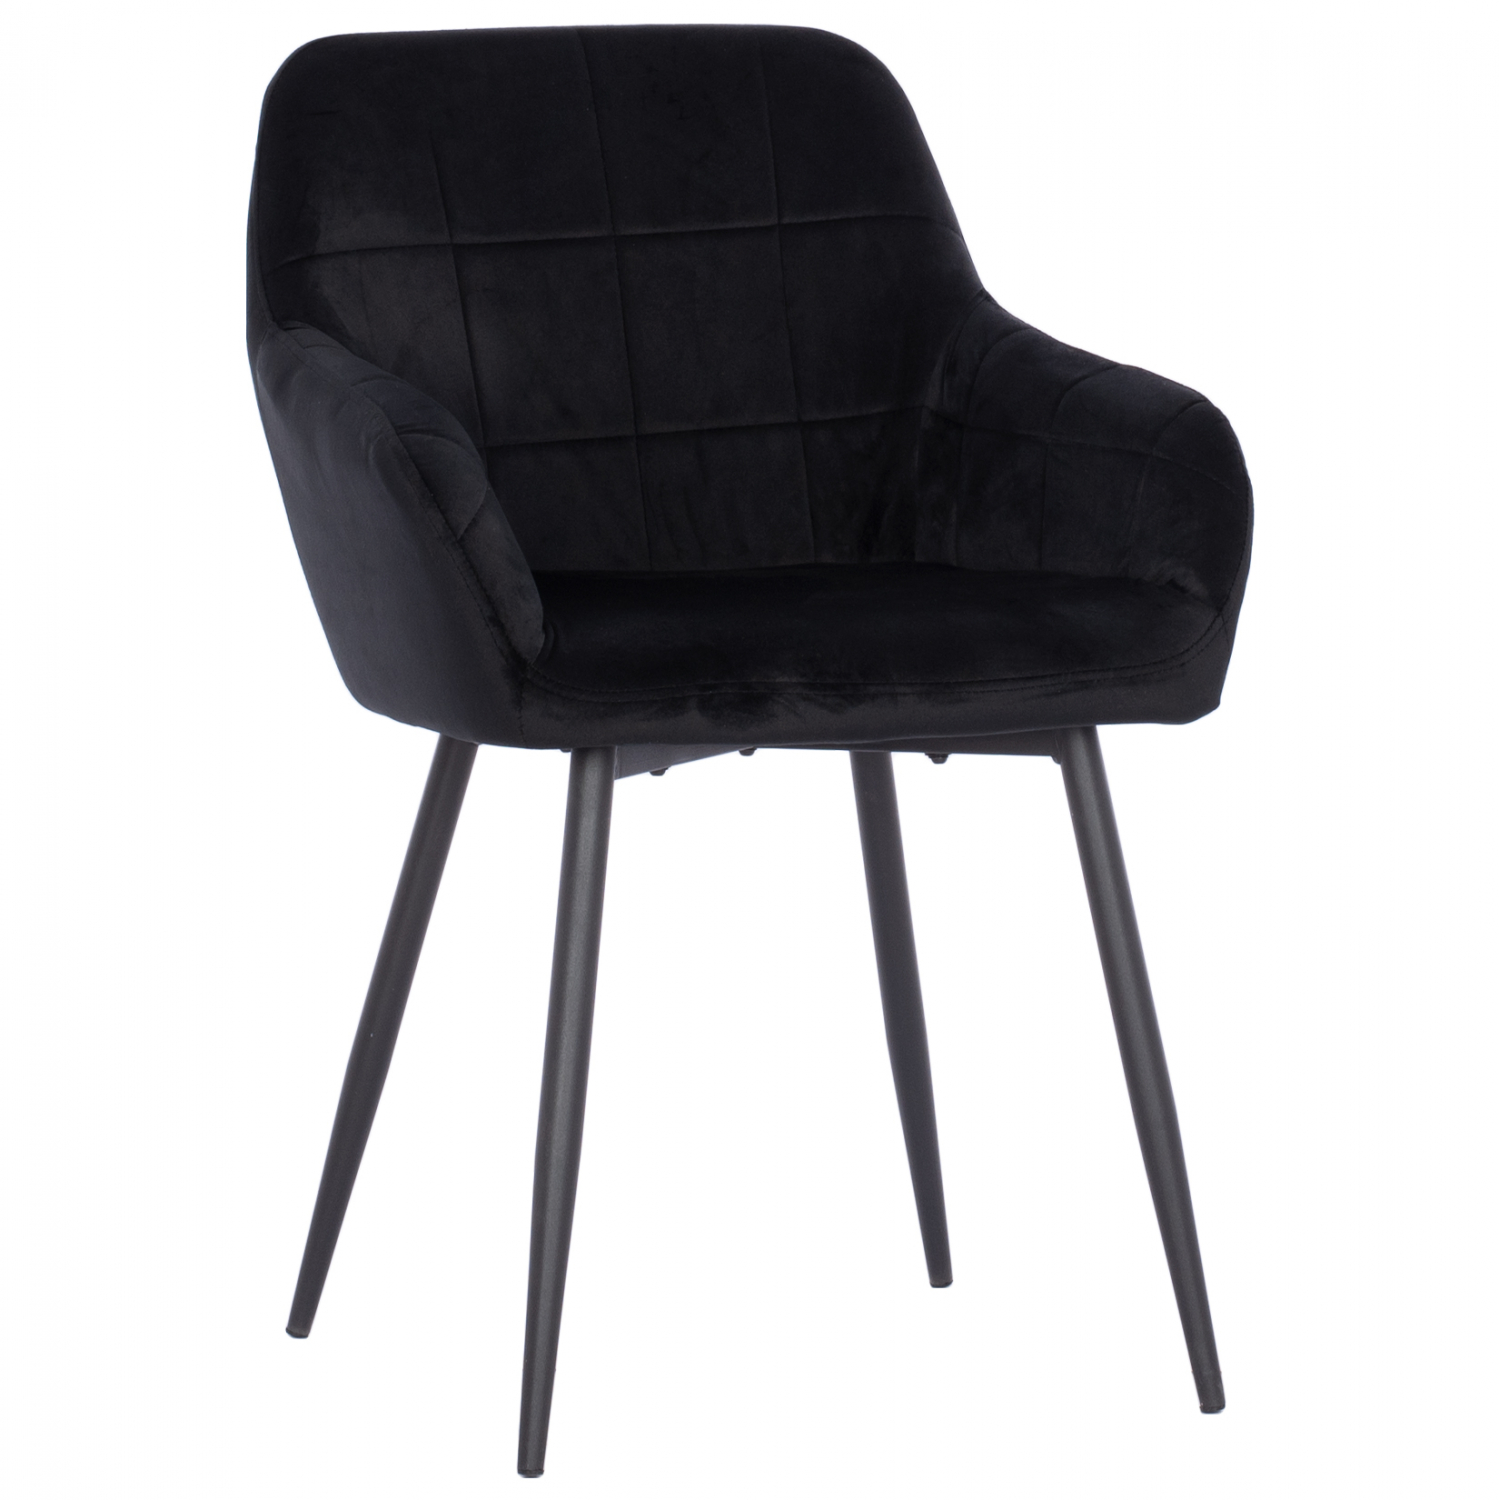 Πολυθρόνα “CHLOE” από βελούδο/μέταλλο σε μαύρο χρώμα 57x61x84